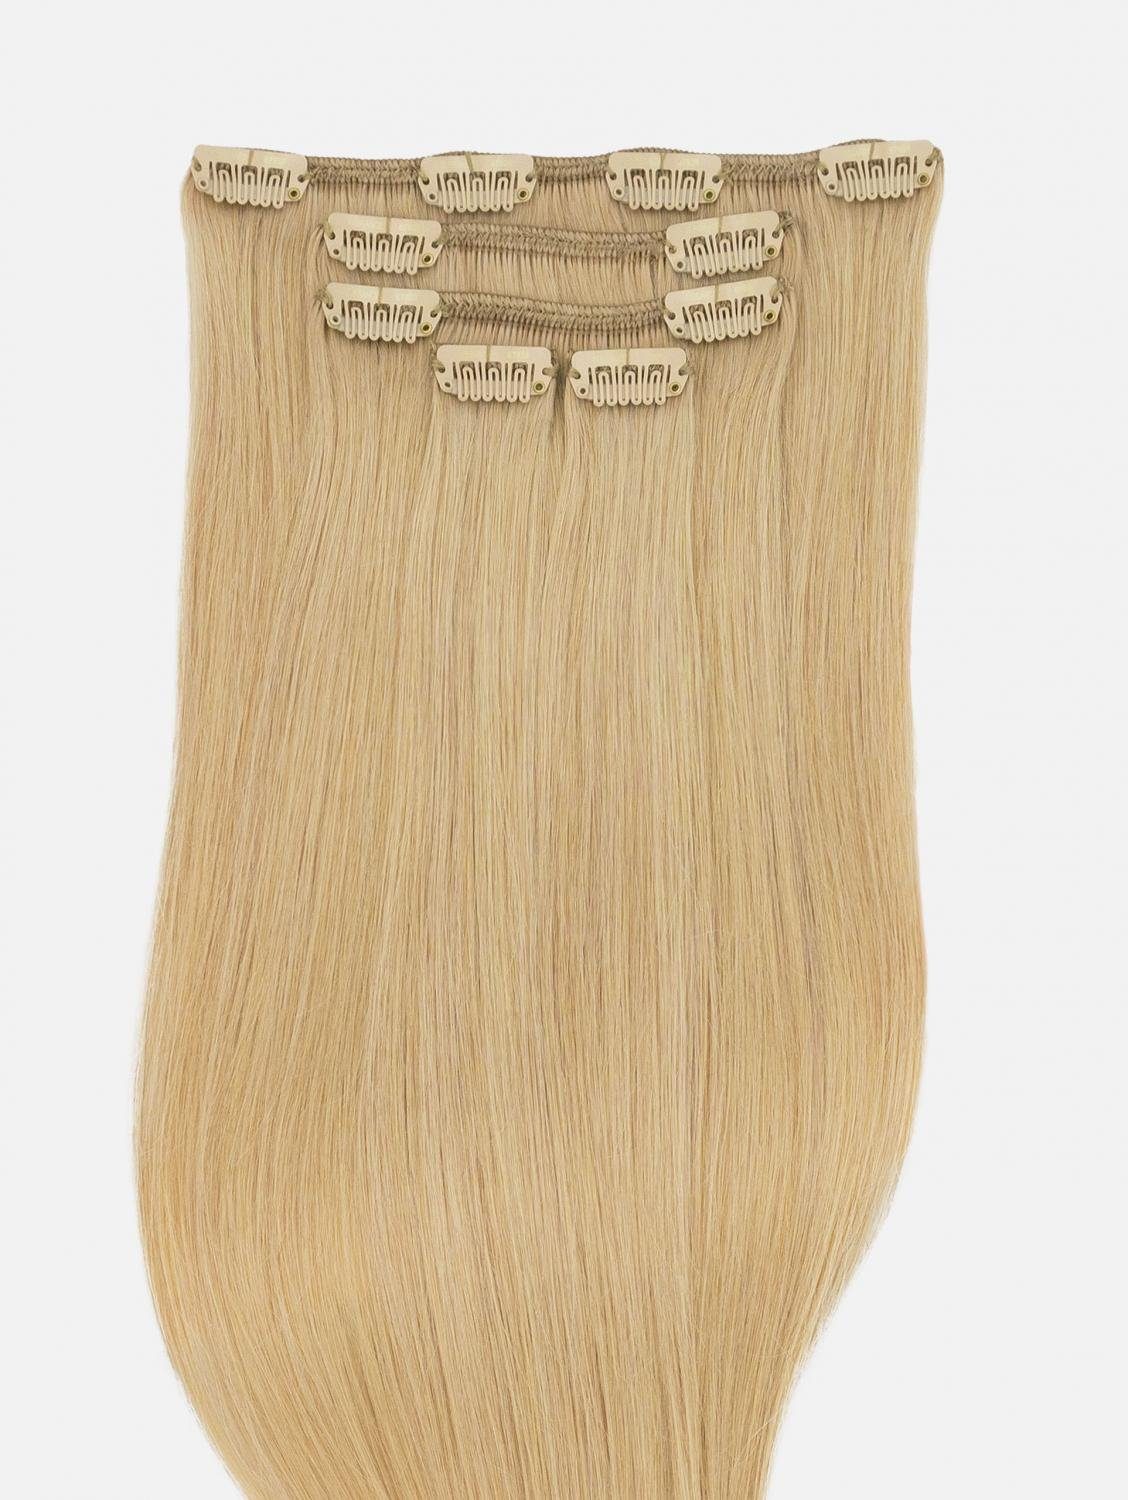 EH Blonde) Extensions 50cm, - #22 40cm, 5-teilig Clip-In Seidenglatt NATURAL - Echthaar Haarverlängerung Echthaar Echthaar-Extension (Sahara